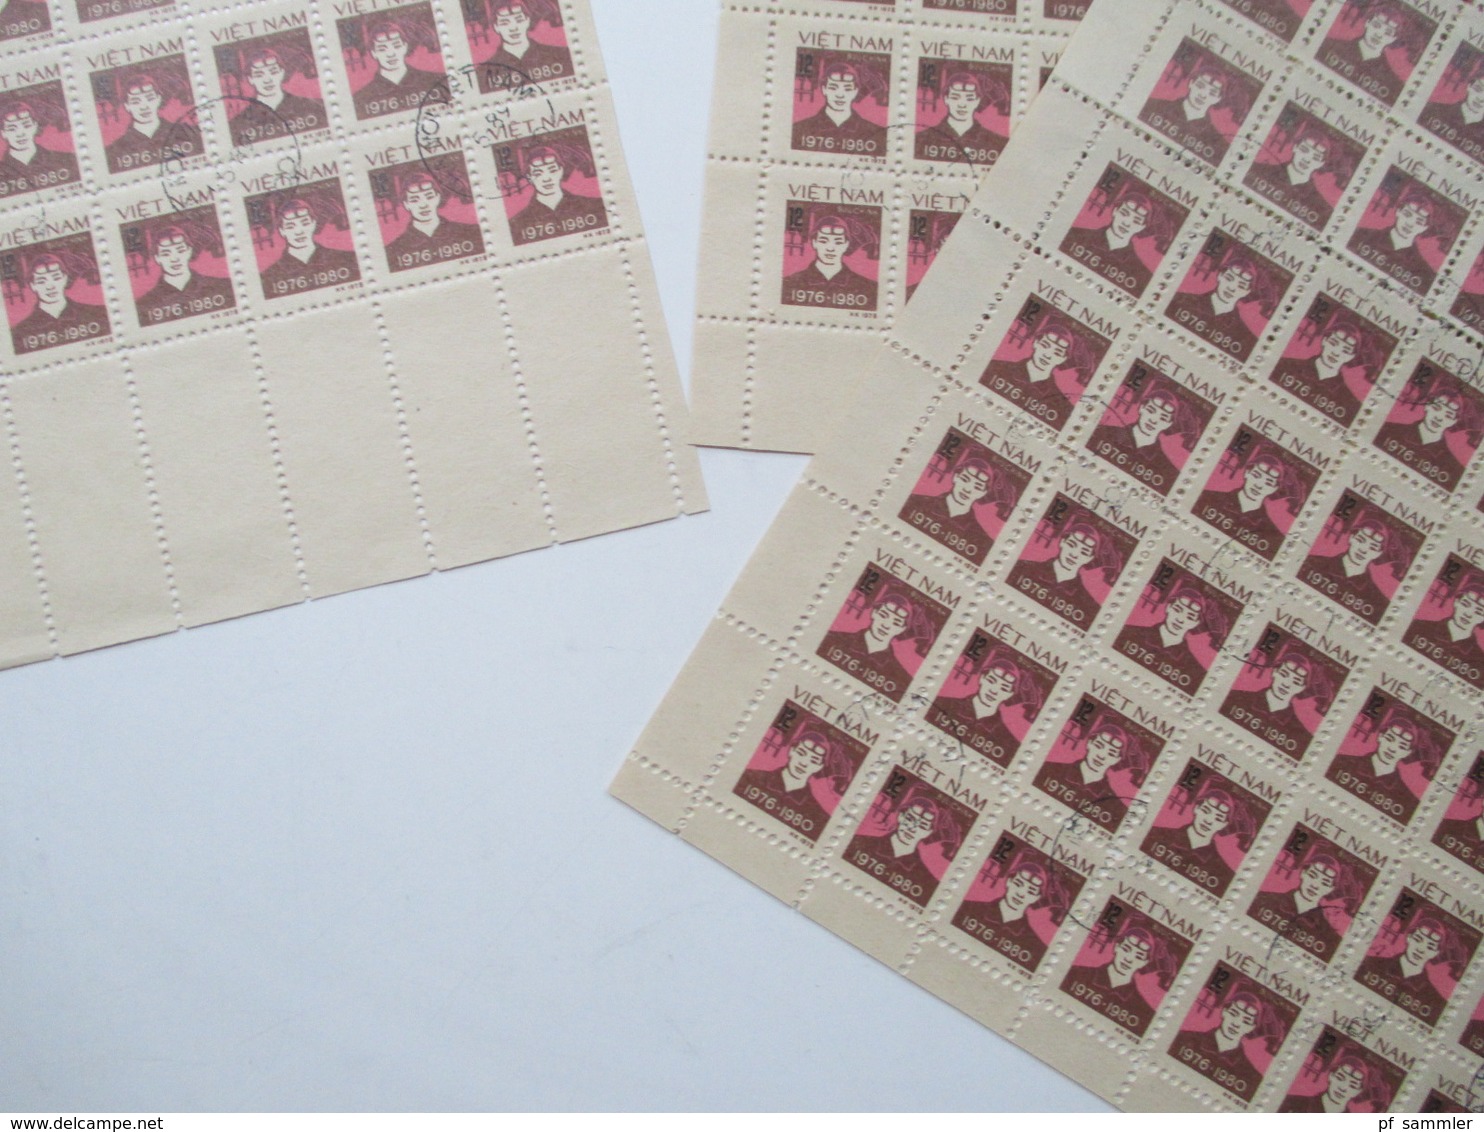 Vietnam Ca. 1979 -80er Jahre Bogenposten / Bogenteile Mehr Als 75 Stk / über 4000 Marken Gestempelt! Fundgrube! Hoher KW - Sammlungen (ohne Album)